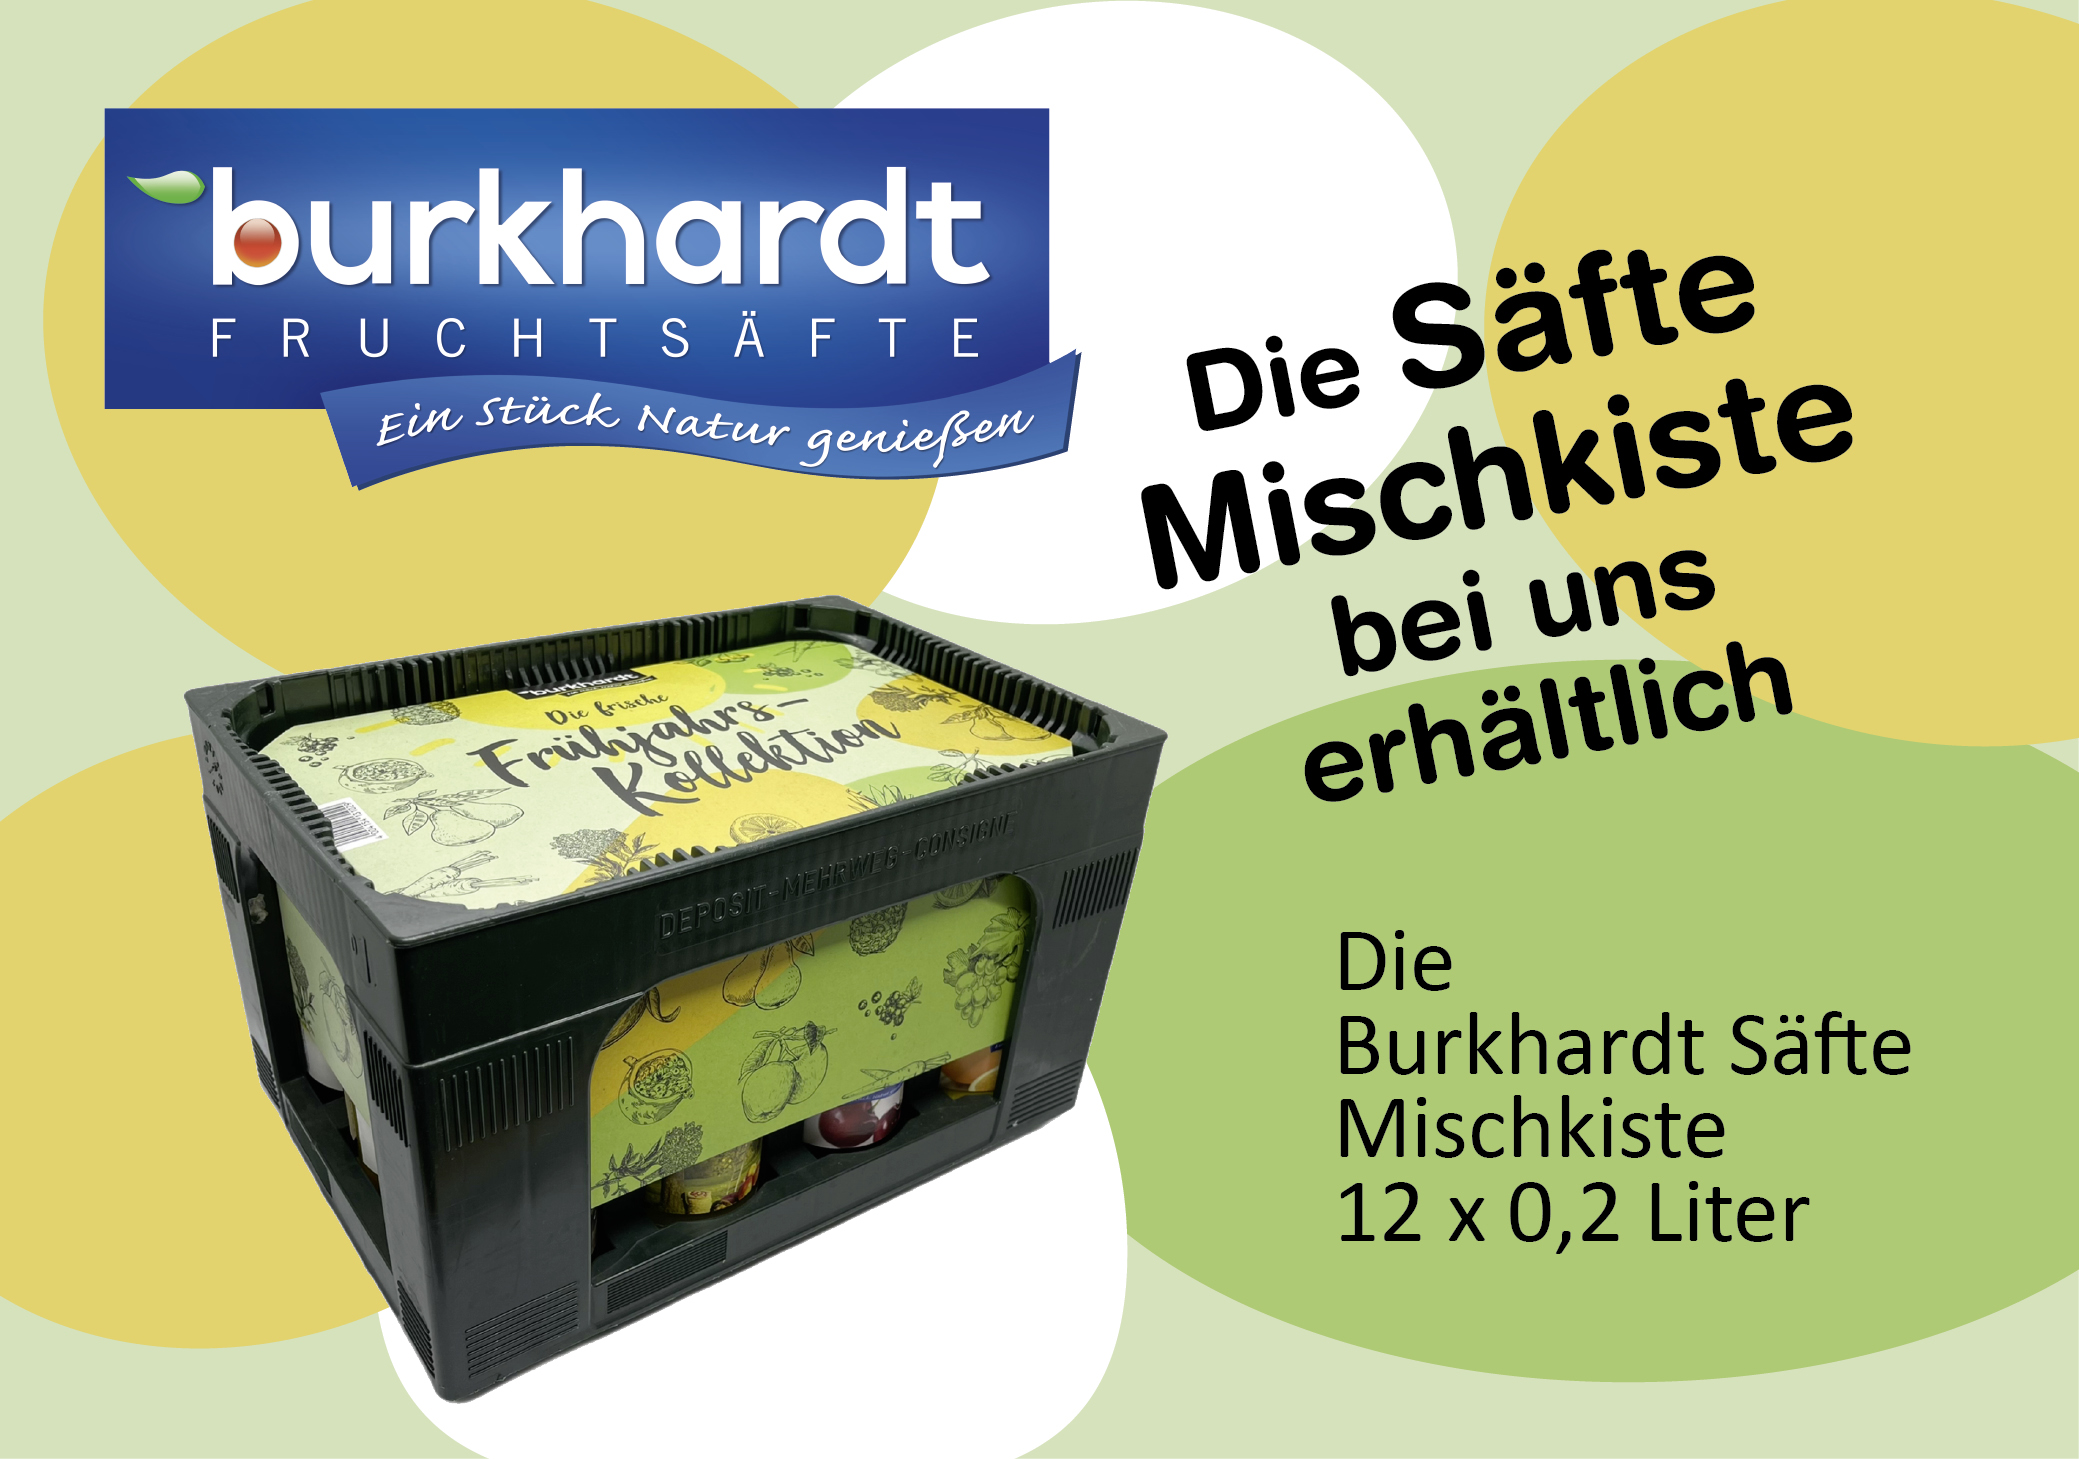 Burkhardt Säfte Mischkiste 12 x 0,2,Liter bei Drinkscout 24 Unterensingen